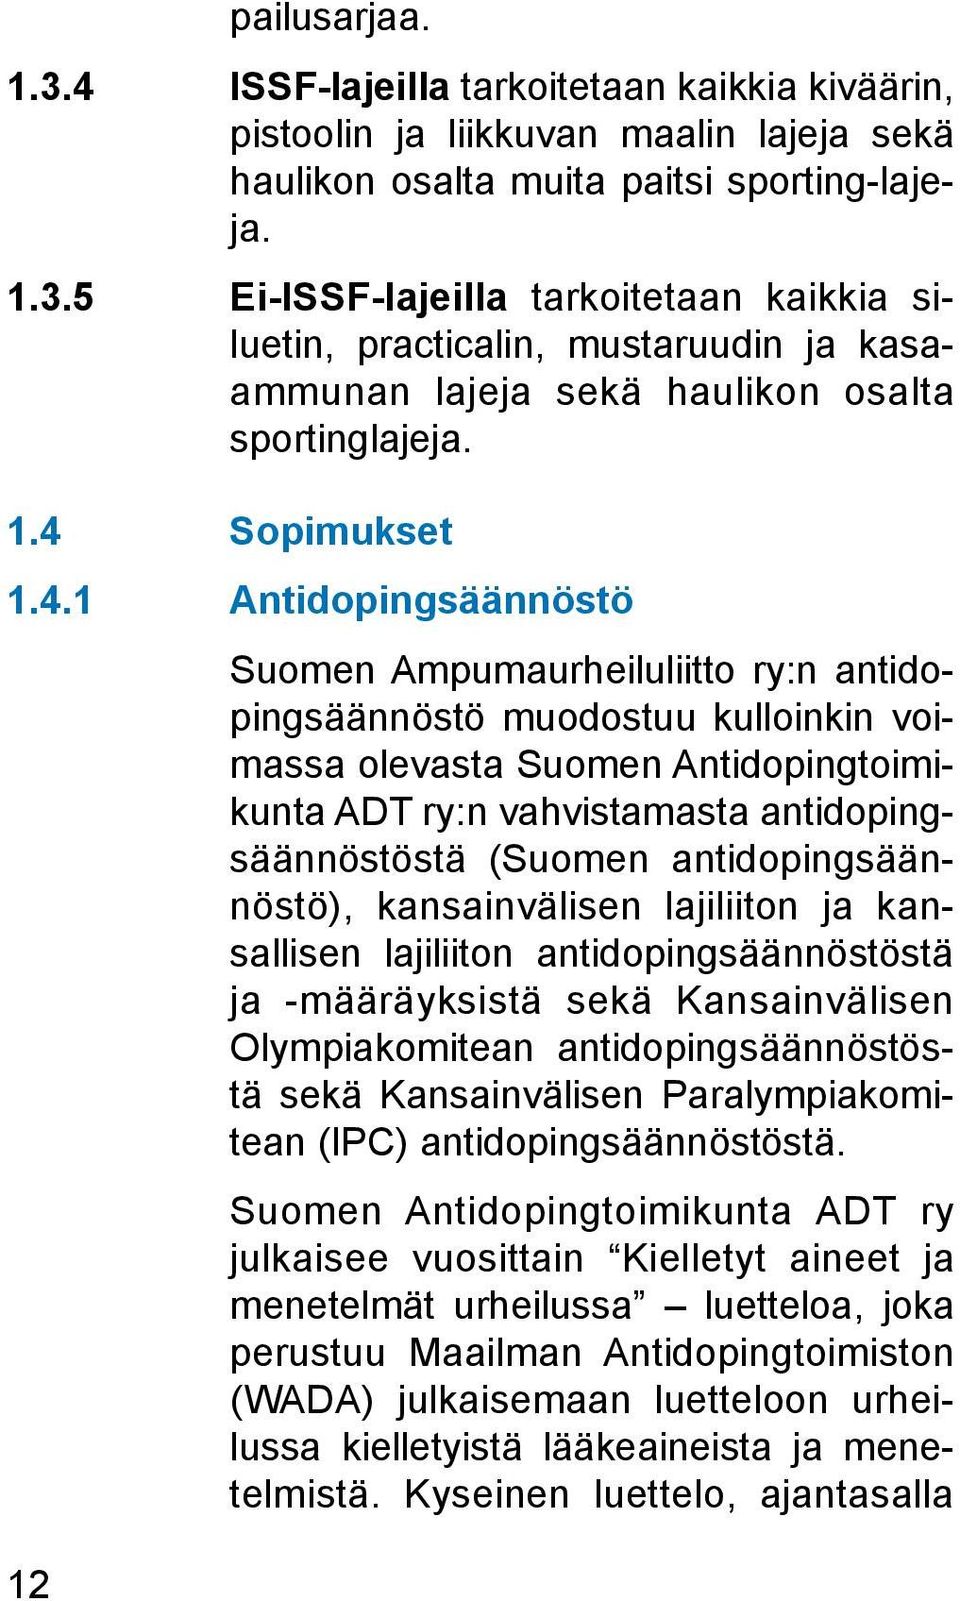 antidopingsäännöstöstä (Suomen antidopingsäännöstö), kansainvälisen lajiliiton ja kansallisen lajiliiton antidopingsäännöstöstä ja -määräyksistä sekä Kansainvälisen Olympiakomitean